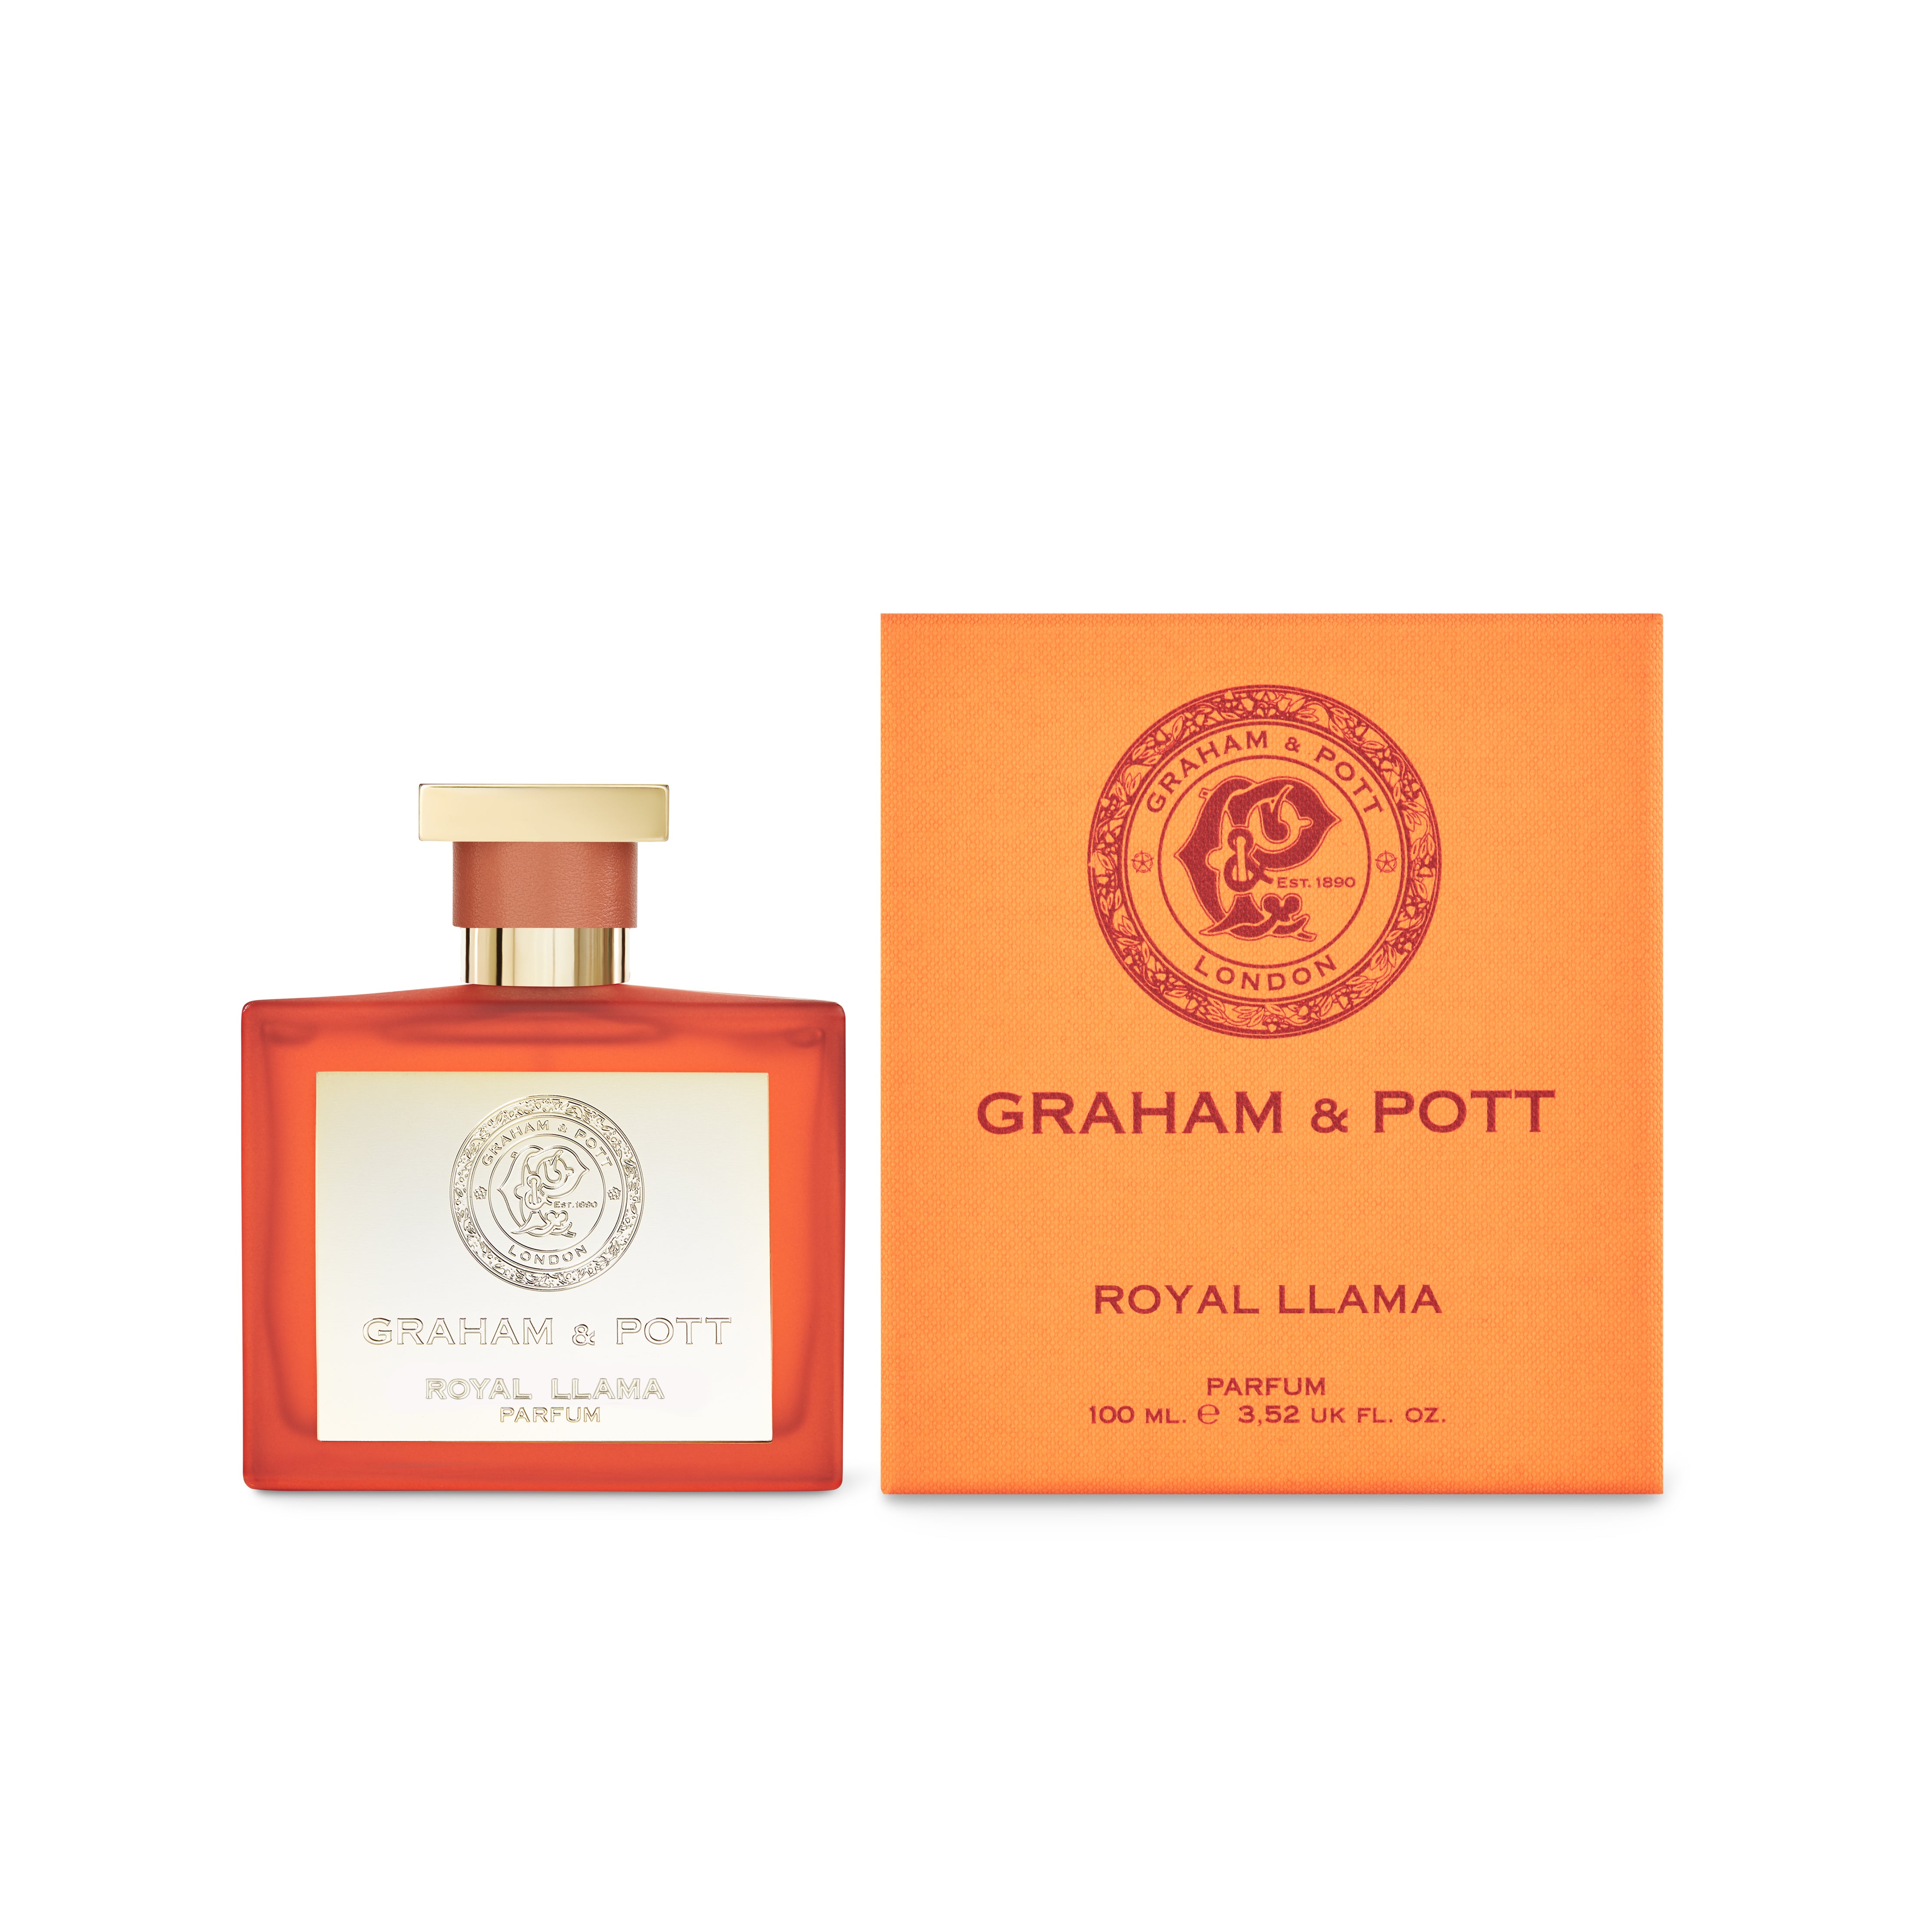 ROYAL LLAMA Parfum - GRAHAM & POTT